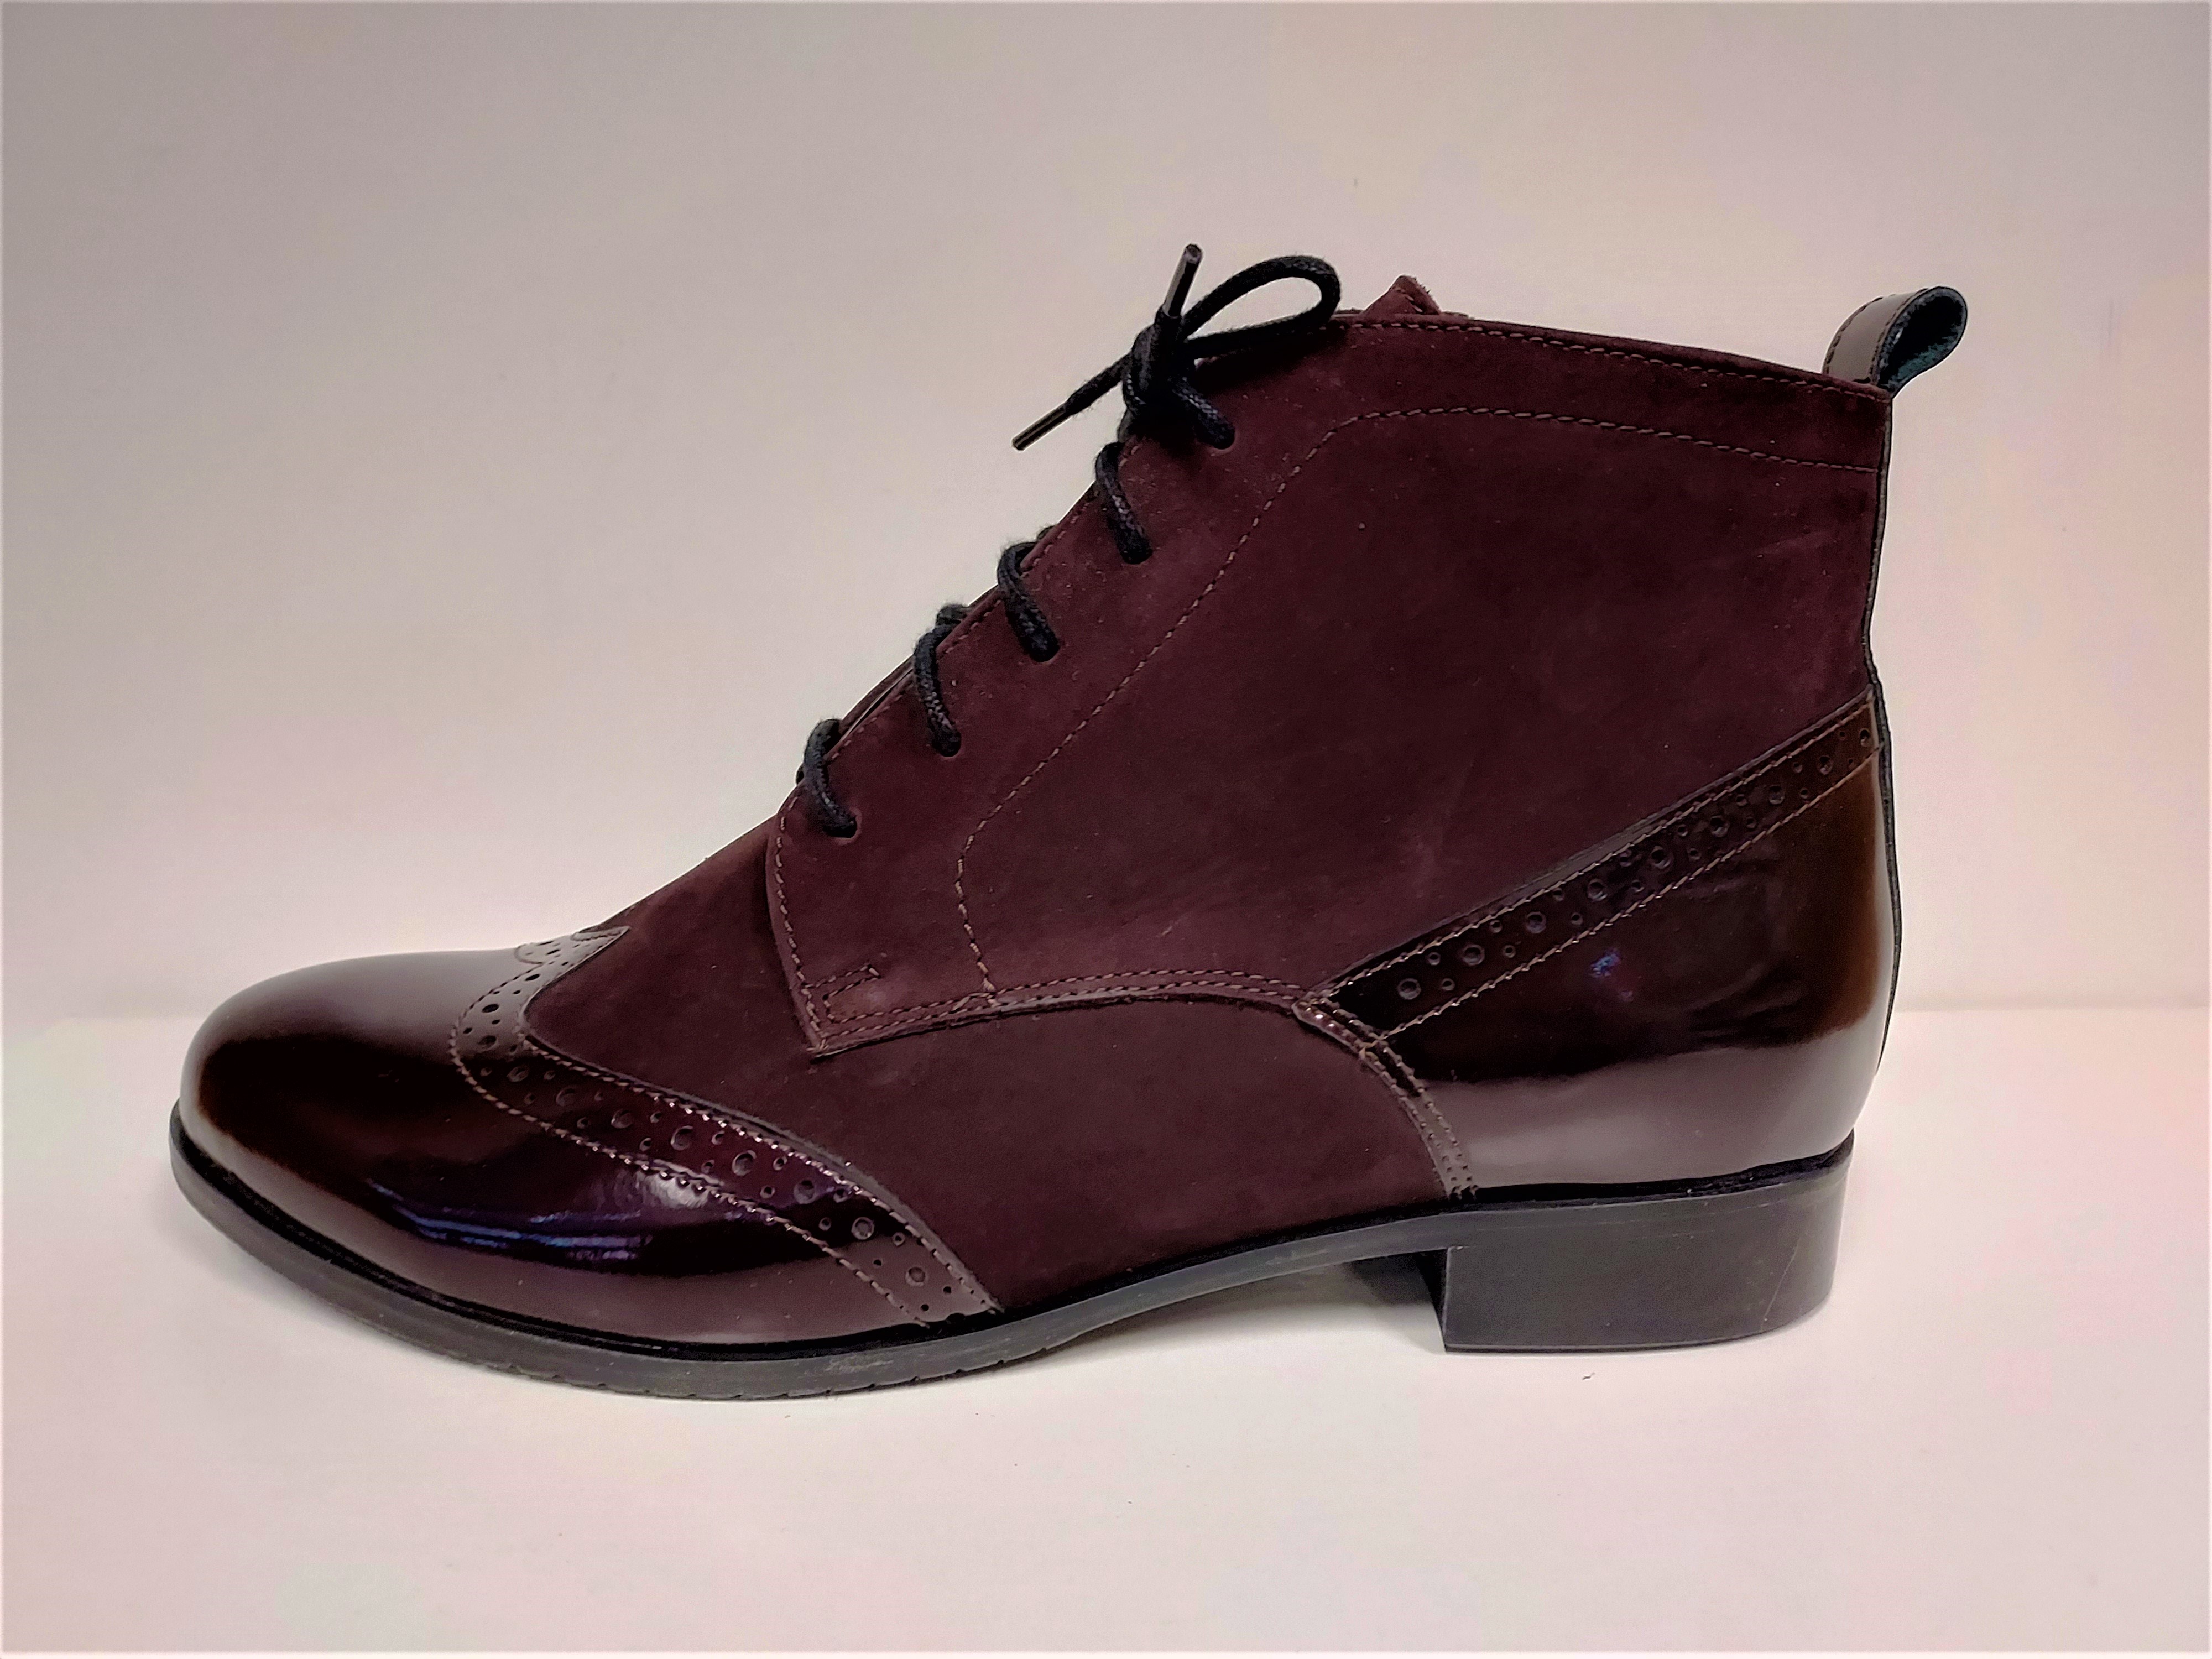 Dámské kožené mírně zateplené bordo kotníkové boty na nízkém podpatku TRAXIN K2808 Tabulka dámských velikostí: 40